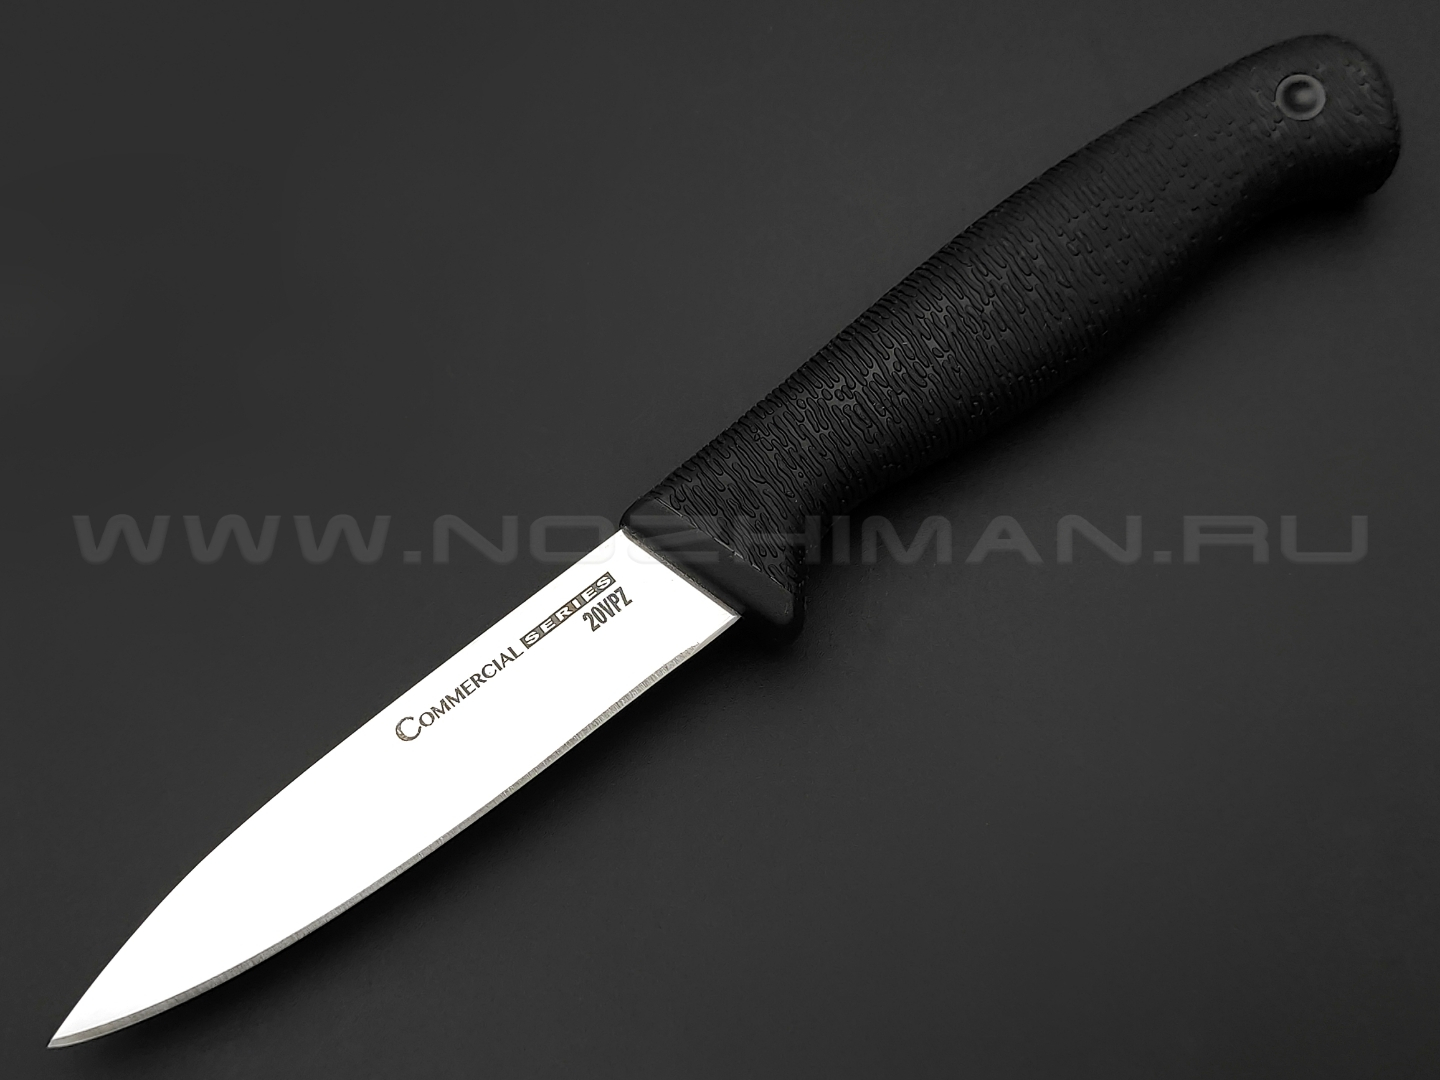 Кухонный нож Cold Steel Paring knife (Commercial Series) 20VPZ сталь 1.4116 рукоять Kray-Ex